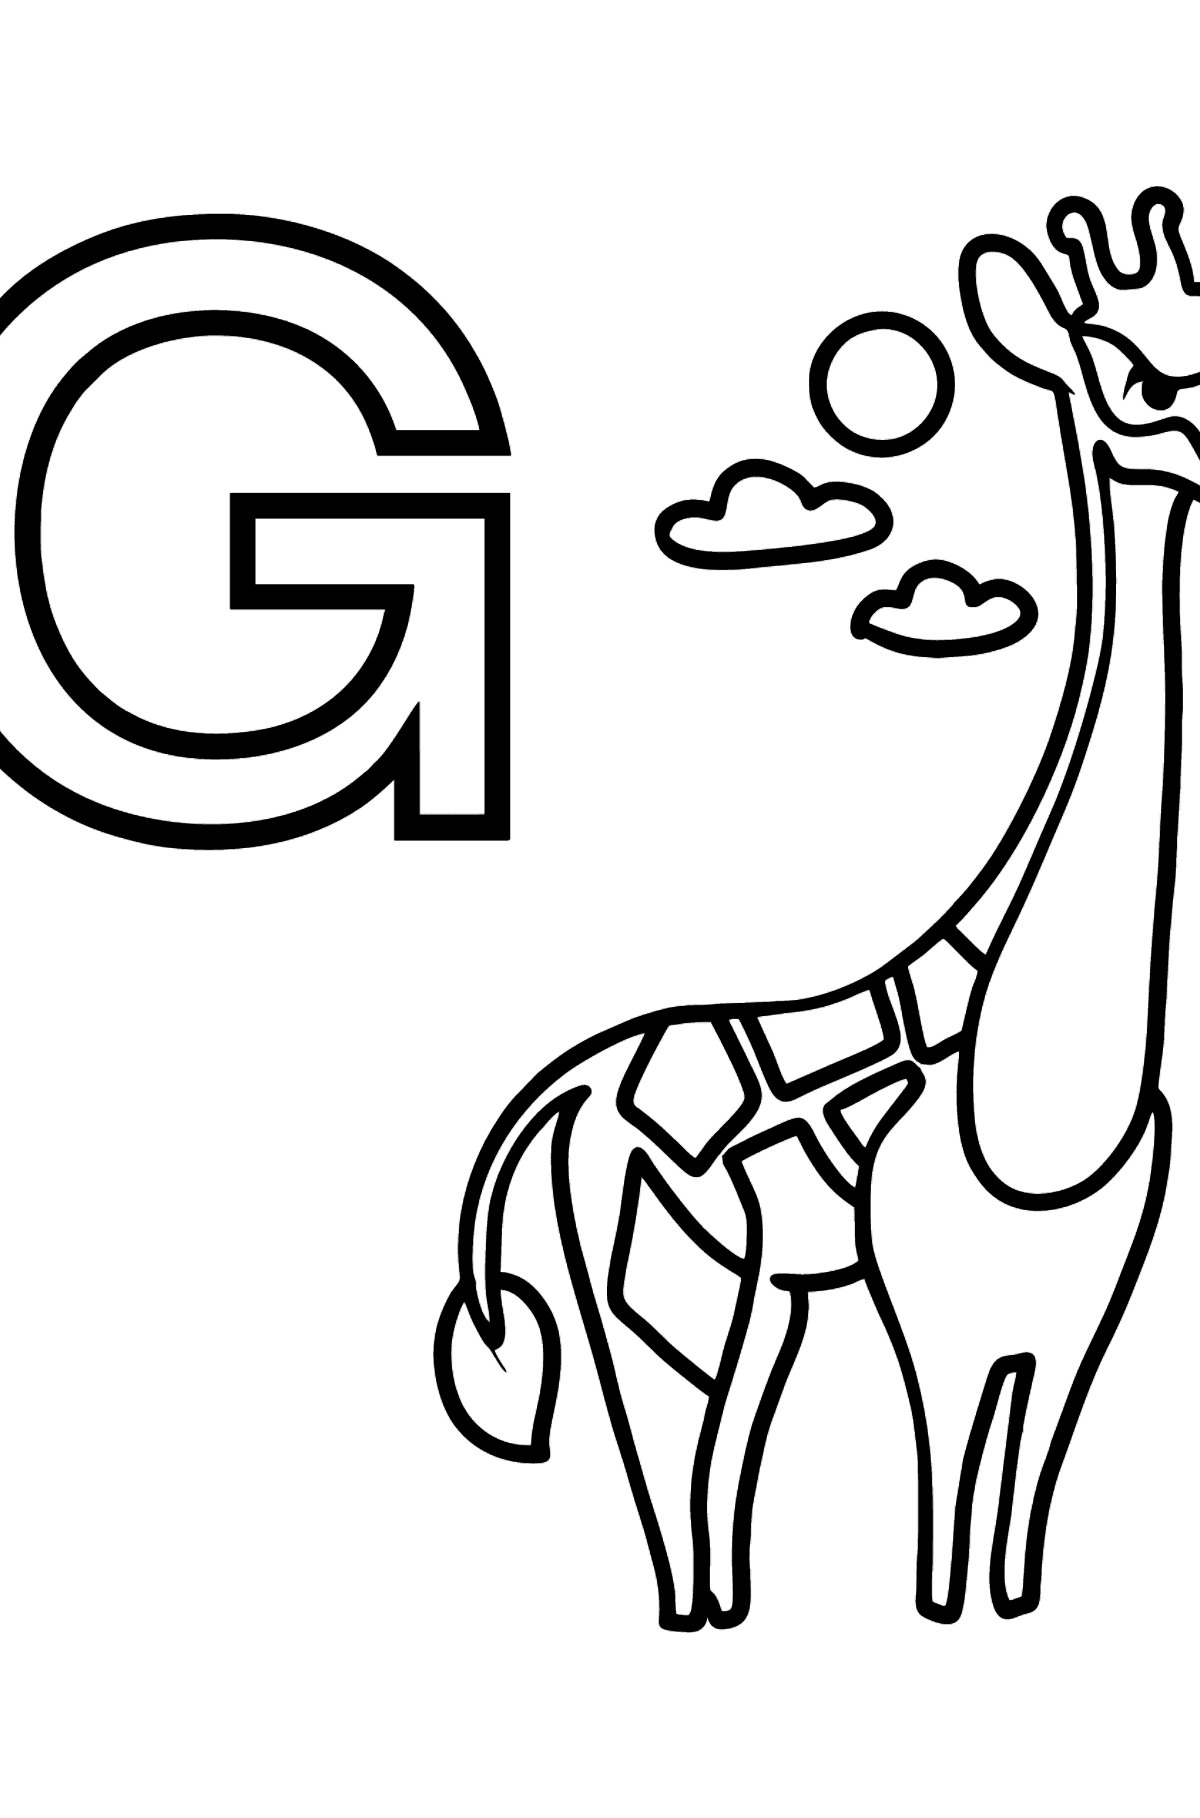 Dibujo de Letra G alemana para colorear - GIRAFFE - Dibujos para Colorear para Niños